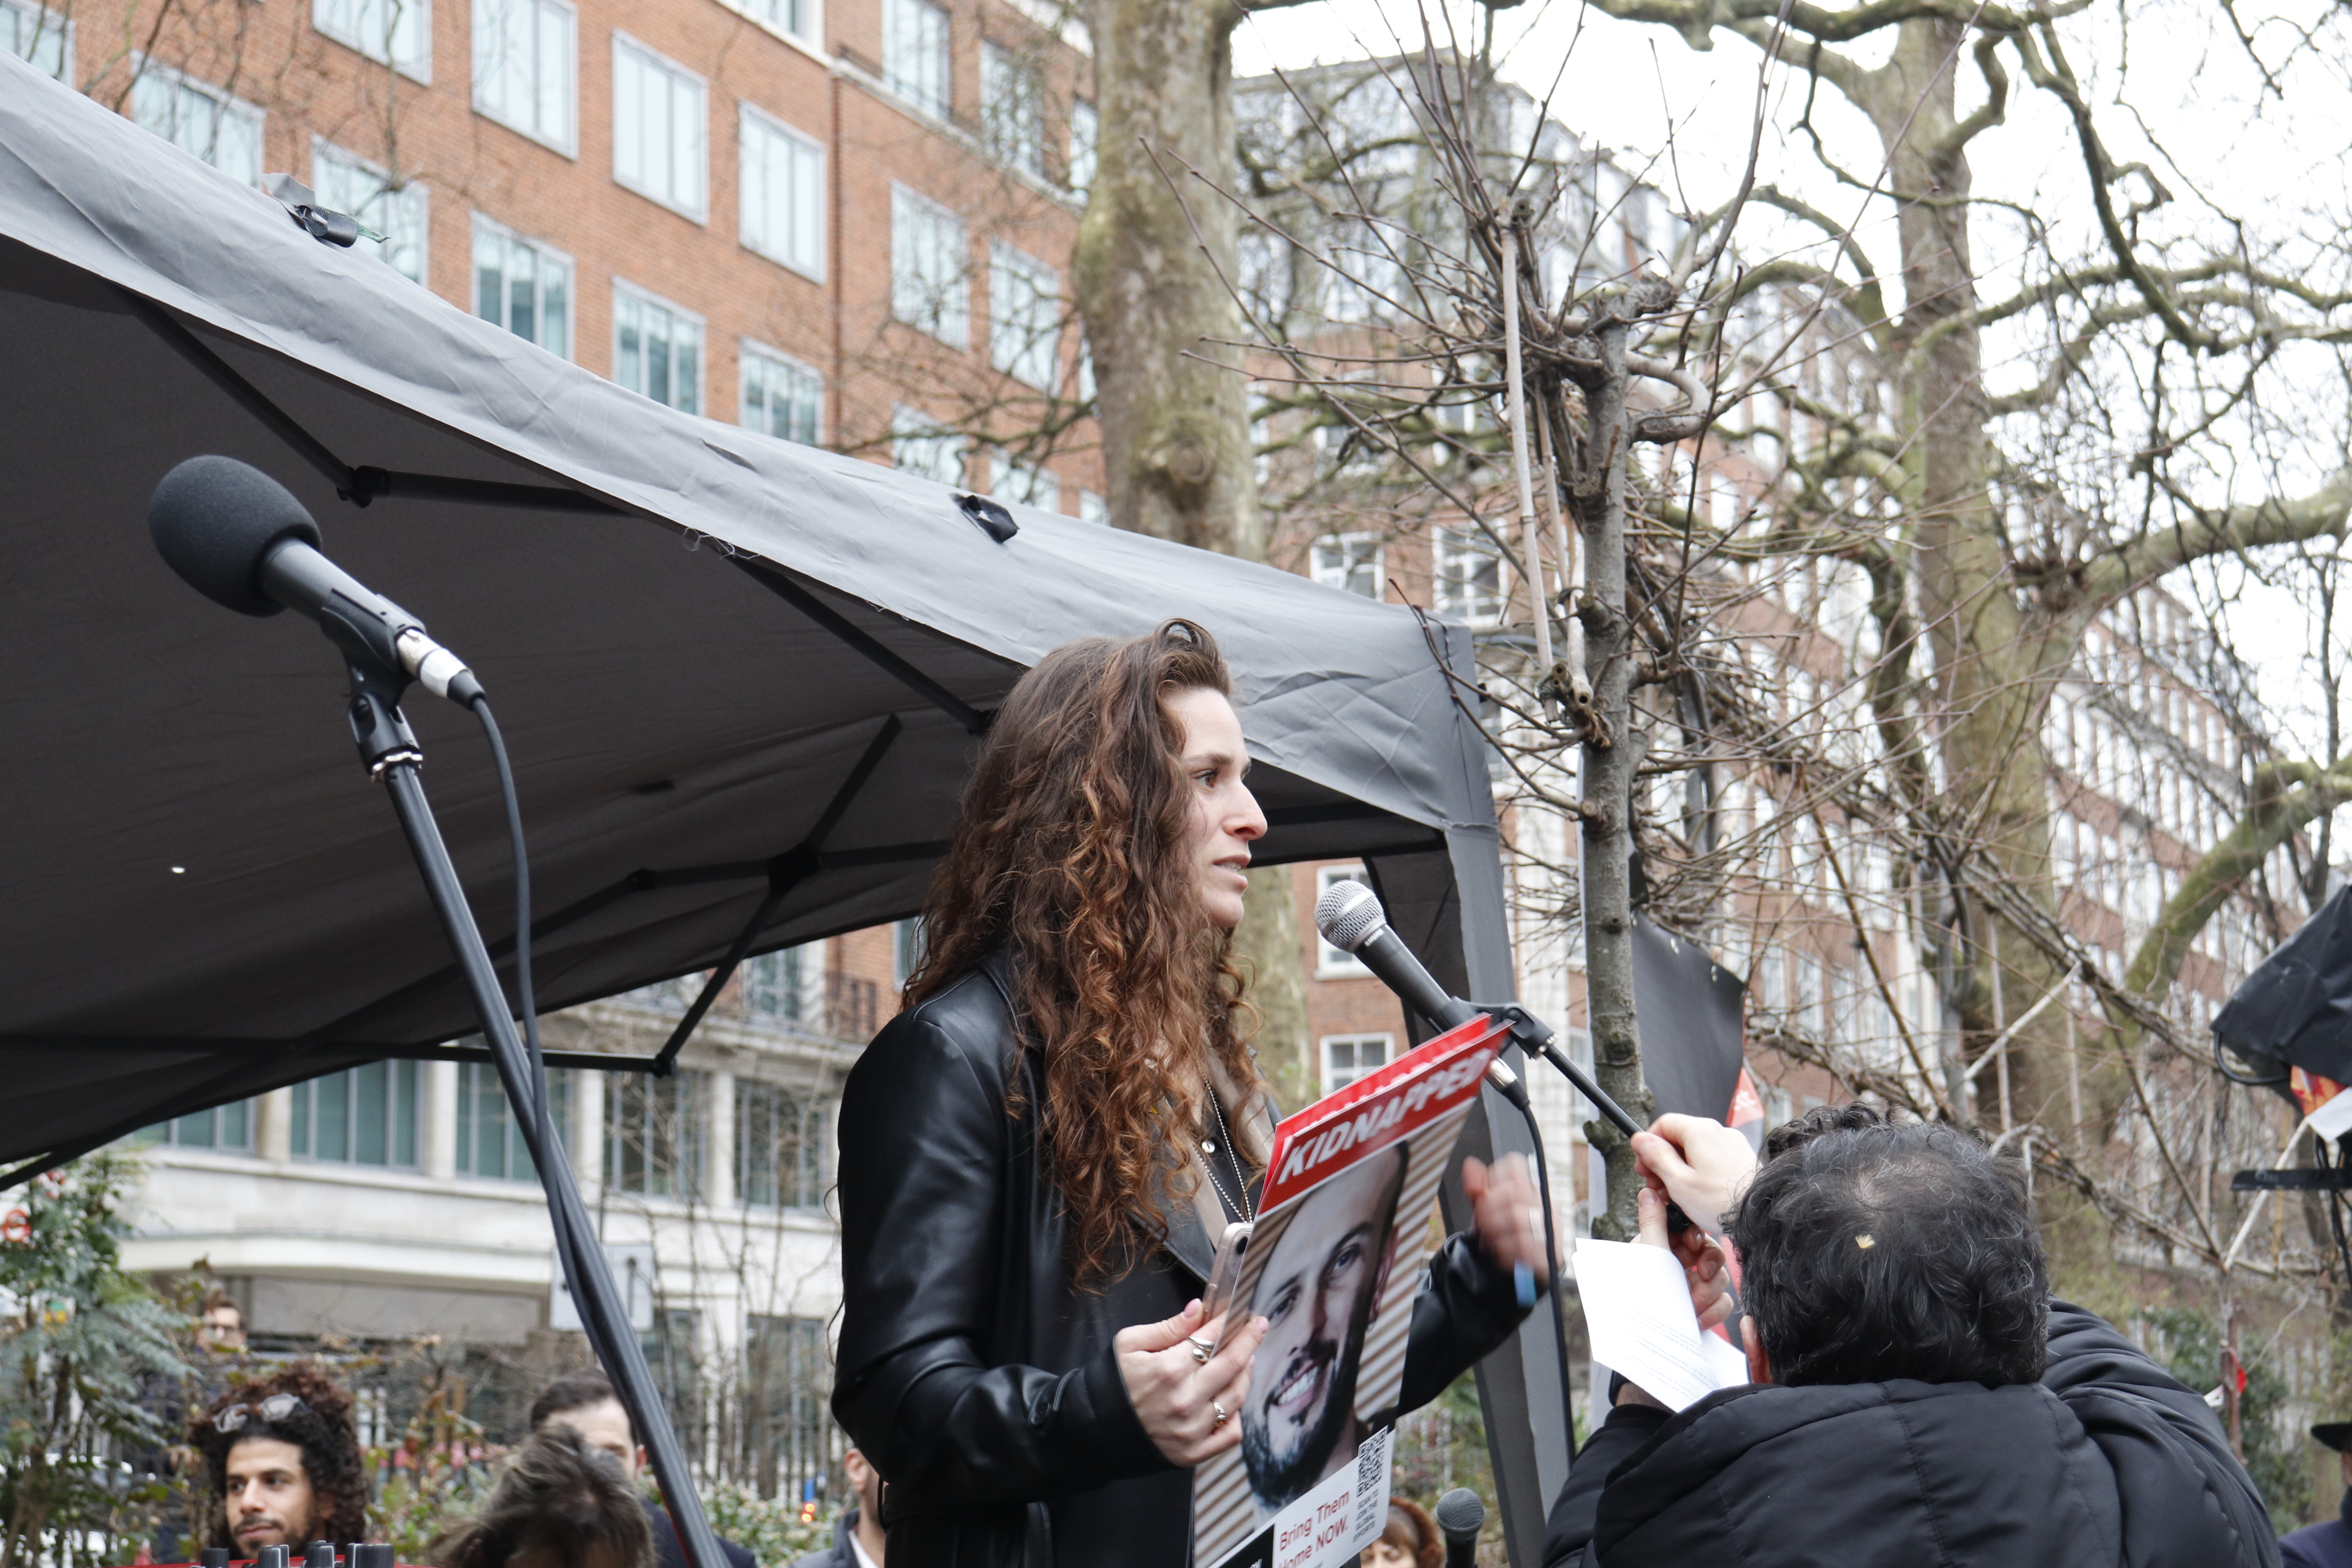 הילה פקלירו, ניצולה ממסיבת הנובה, בעצרת נגד הטרור בלונדון